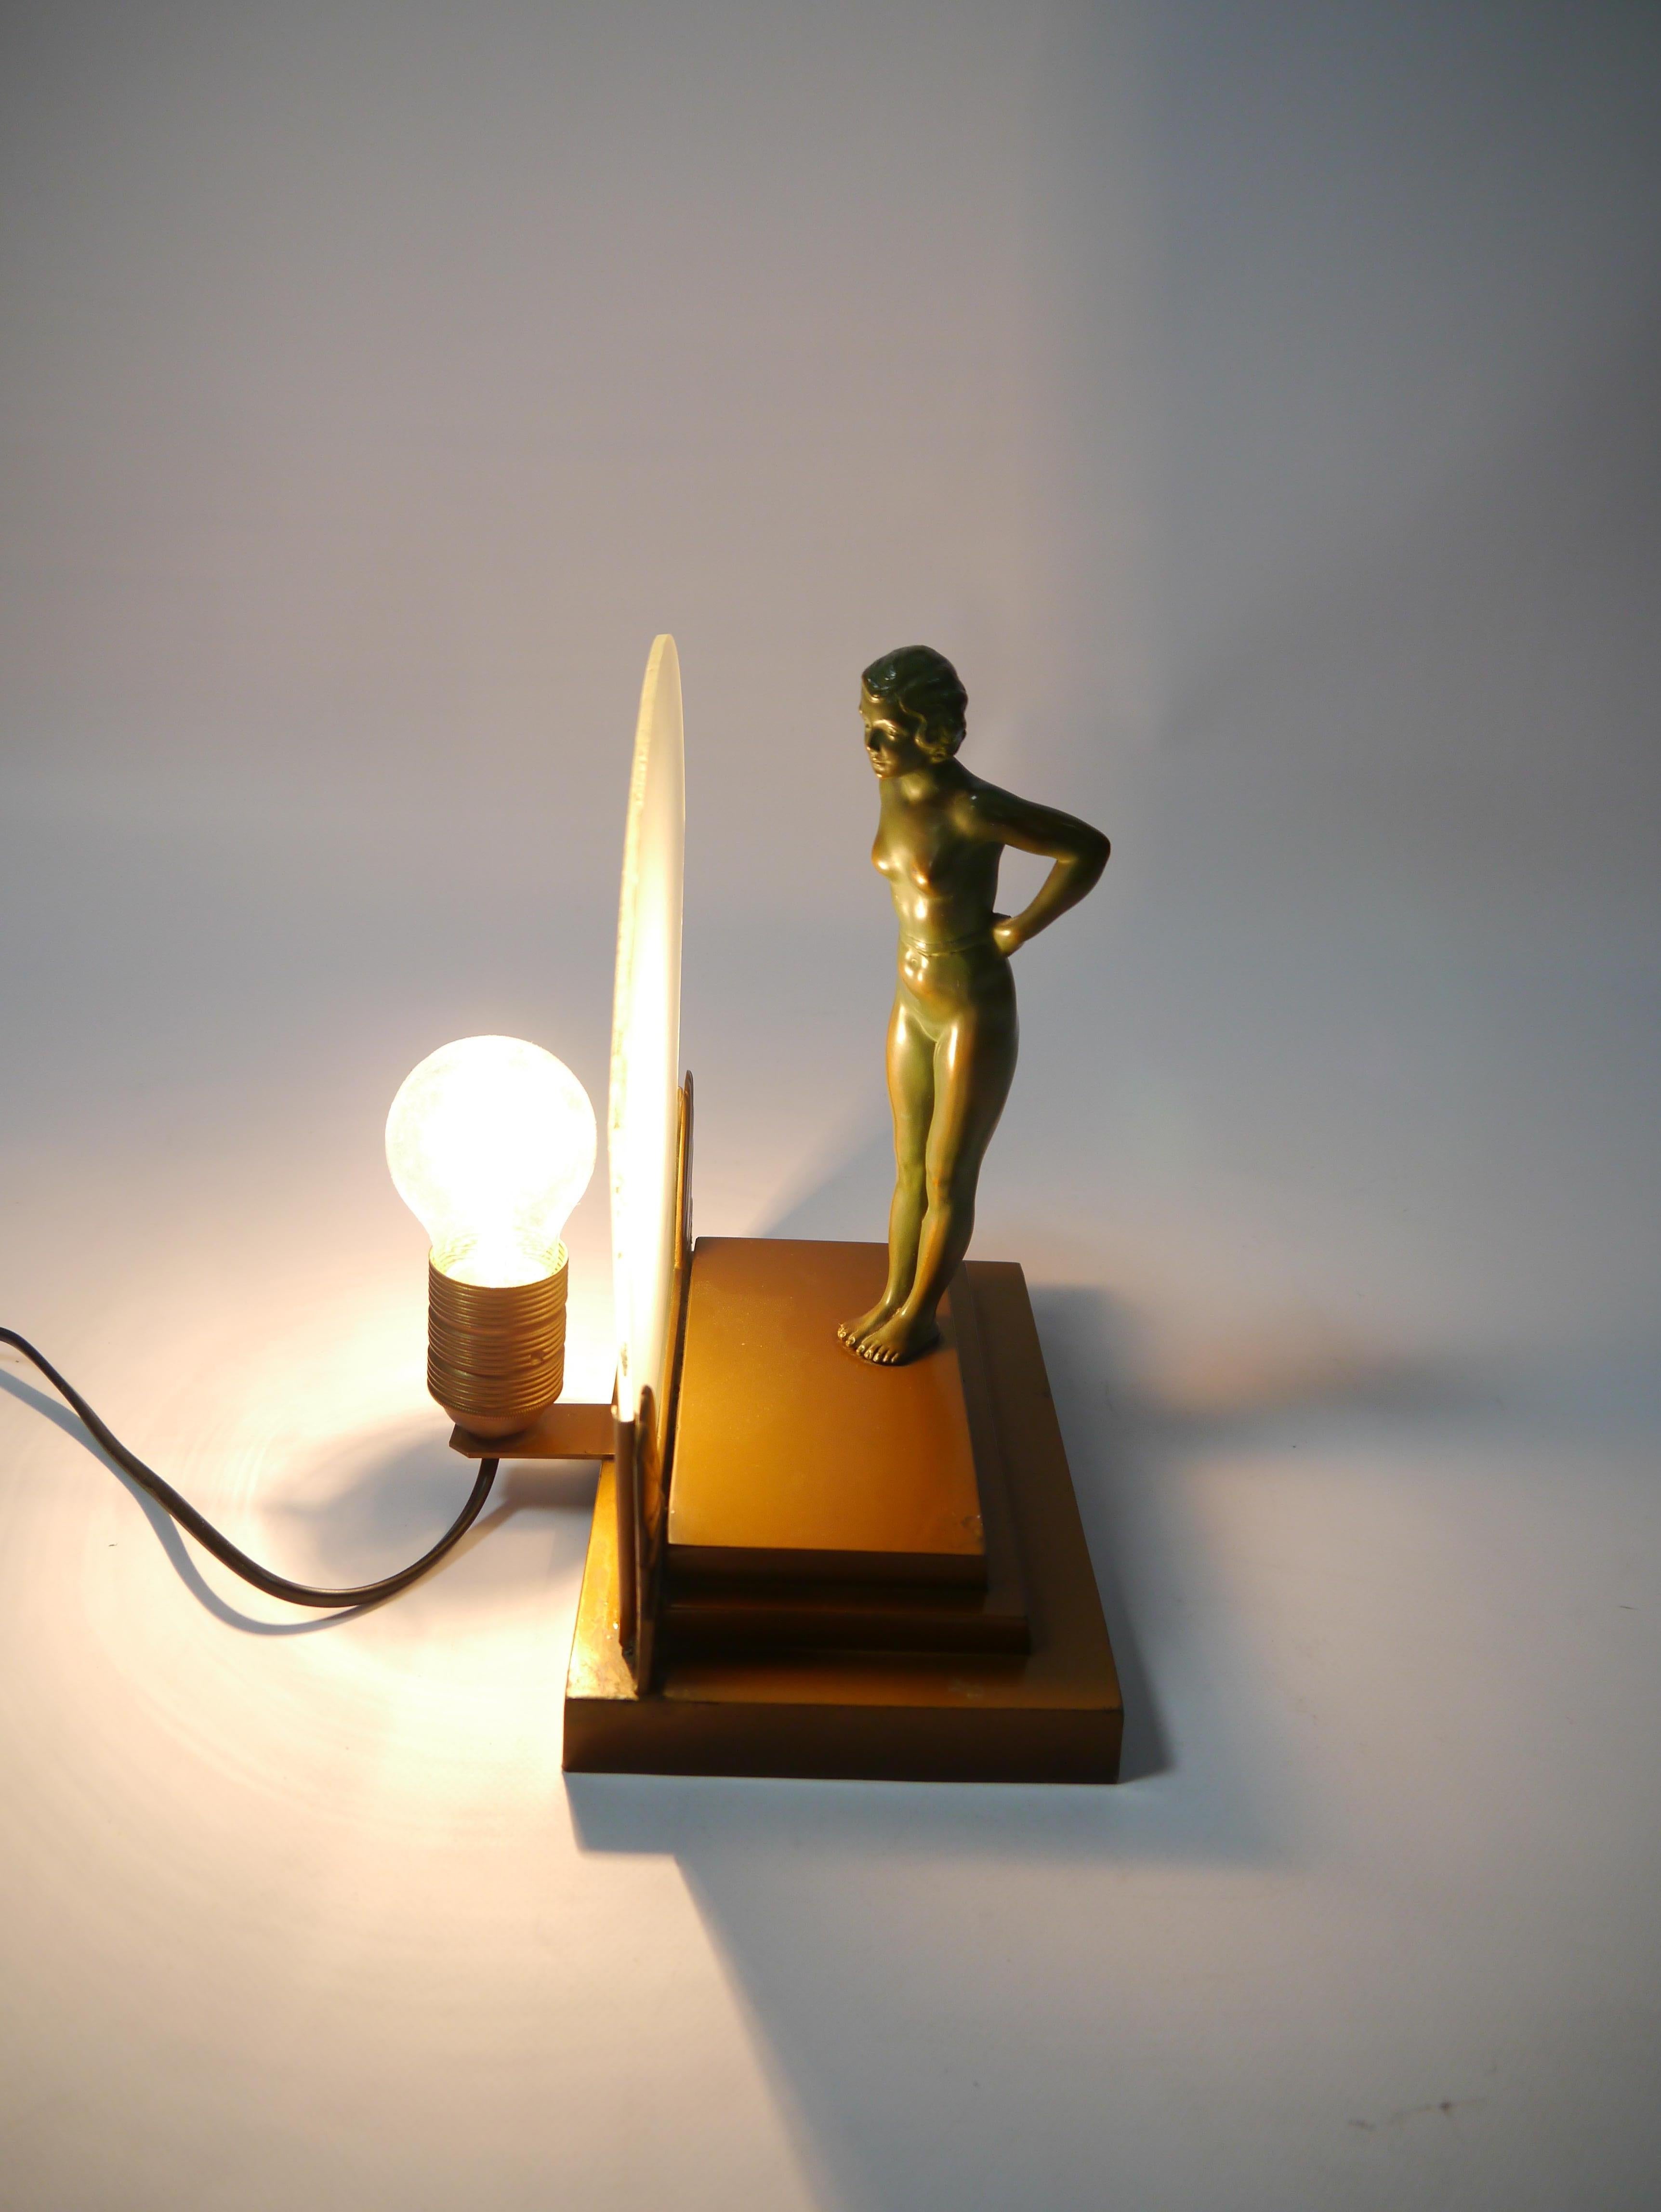 Lampe à figures Art déco, représentant une figure féminine semi-nue en bronze, debout sur un podium et penchée vers un écran en verre dépoli. La figure peut également être tournée de 180 degrés. La figurine présente des détails délicats et une belle